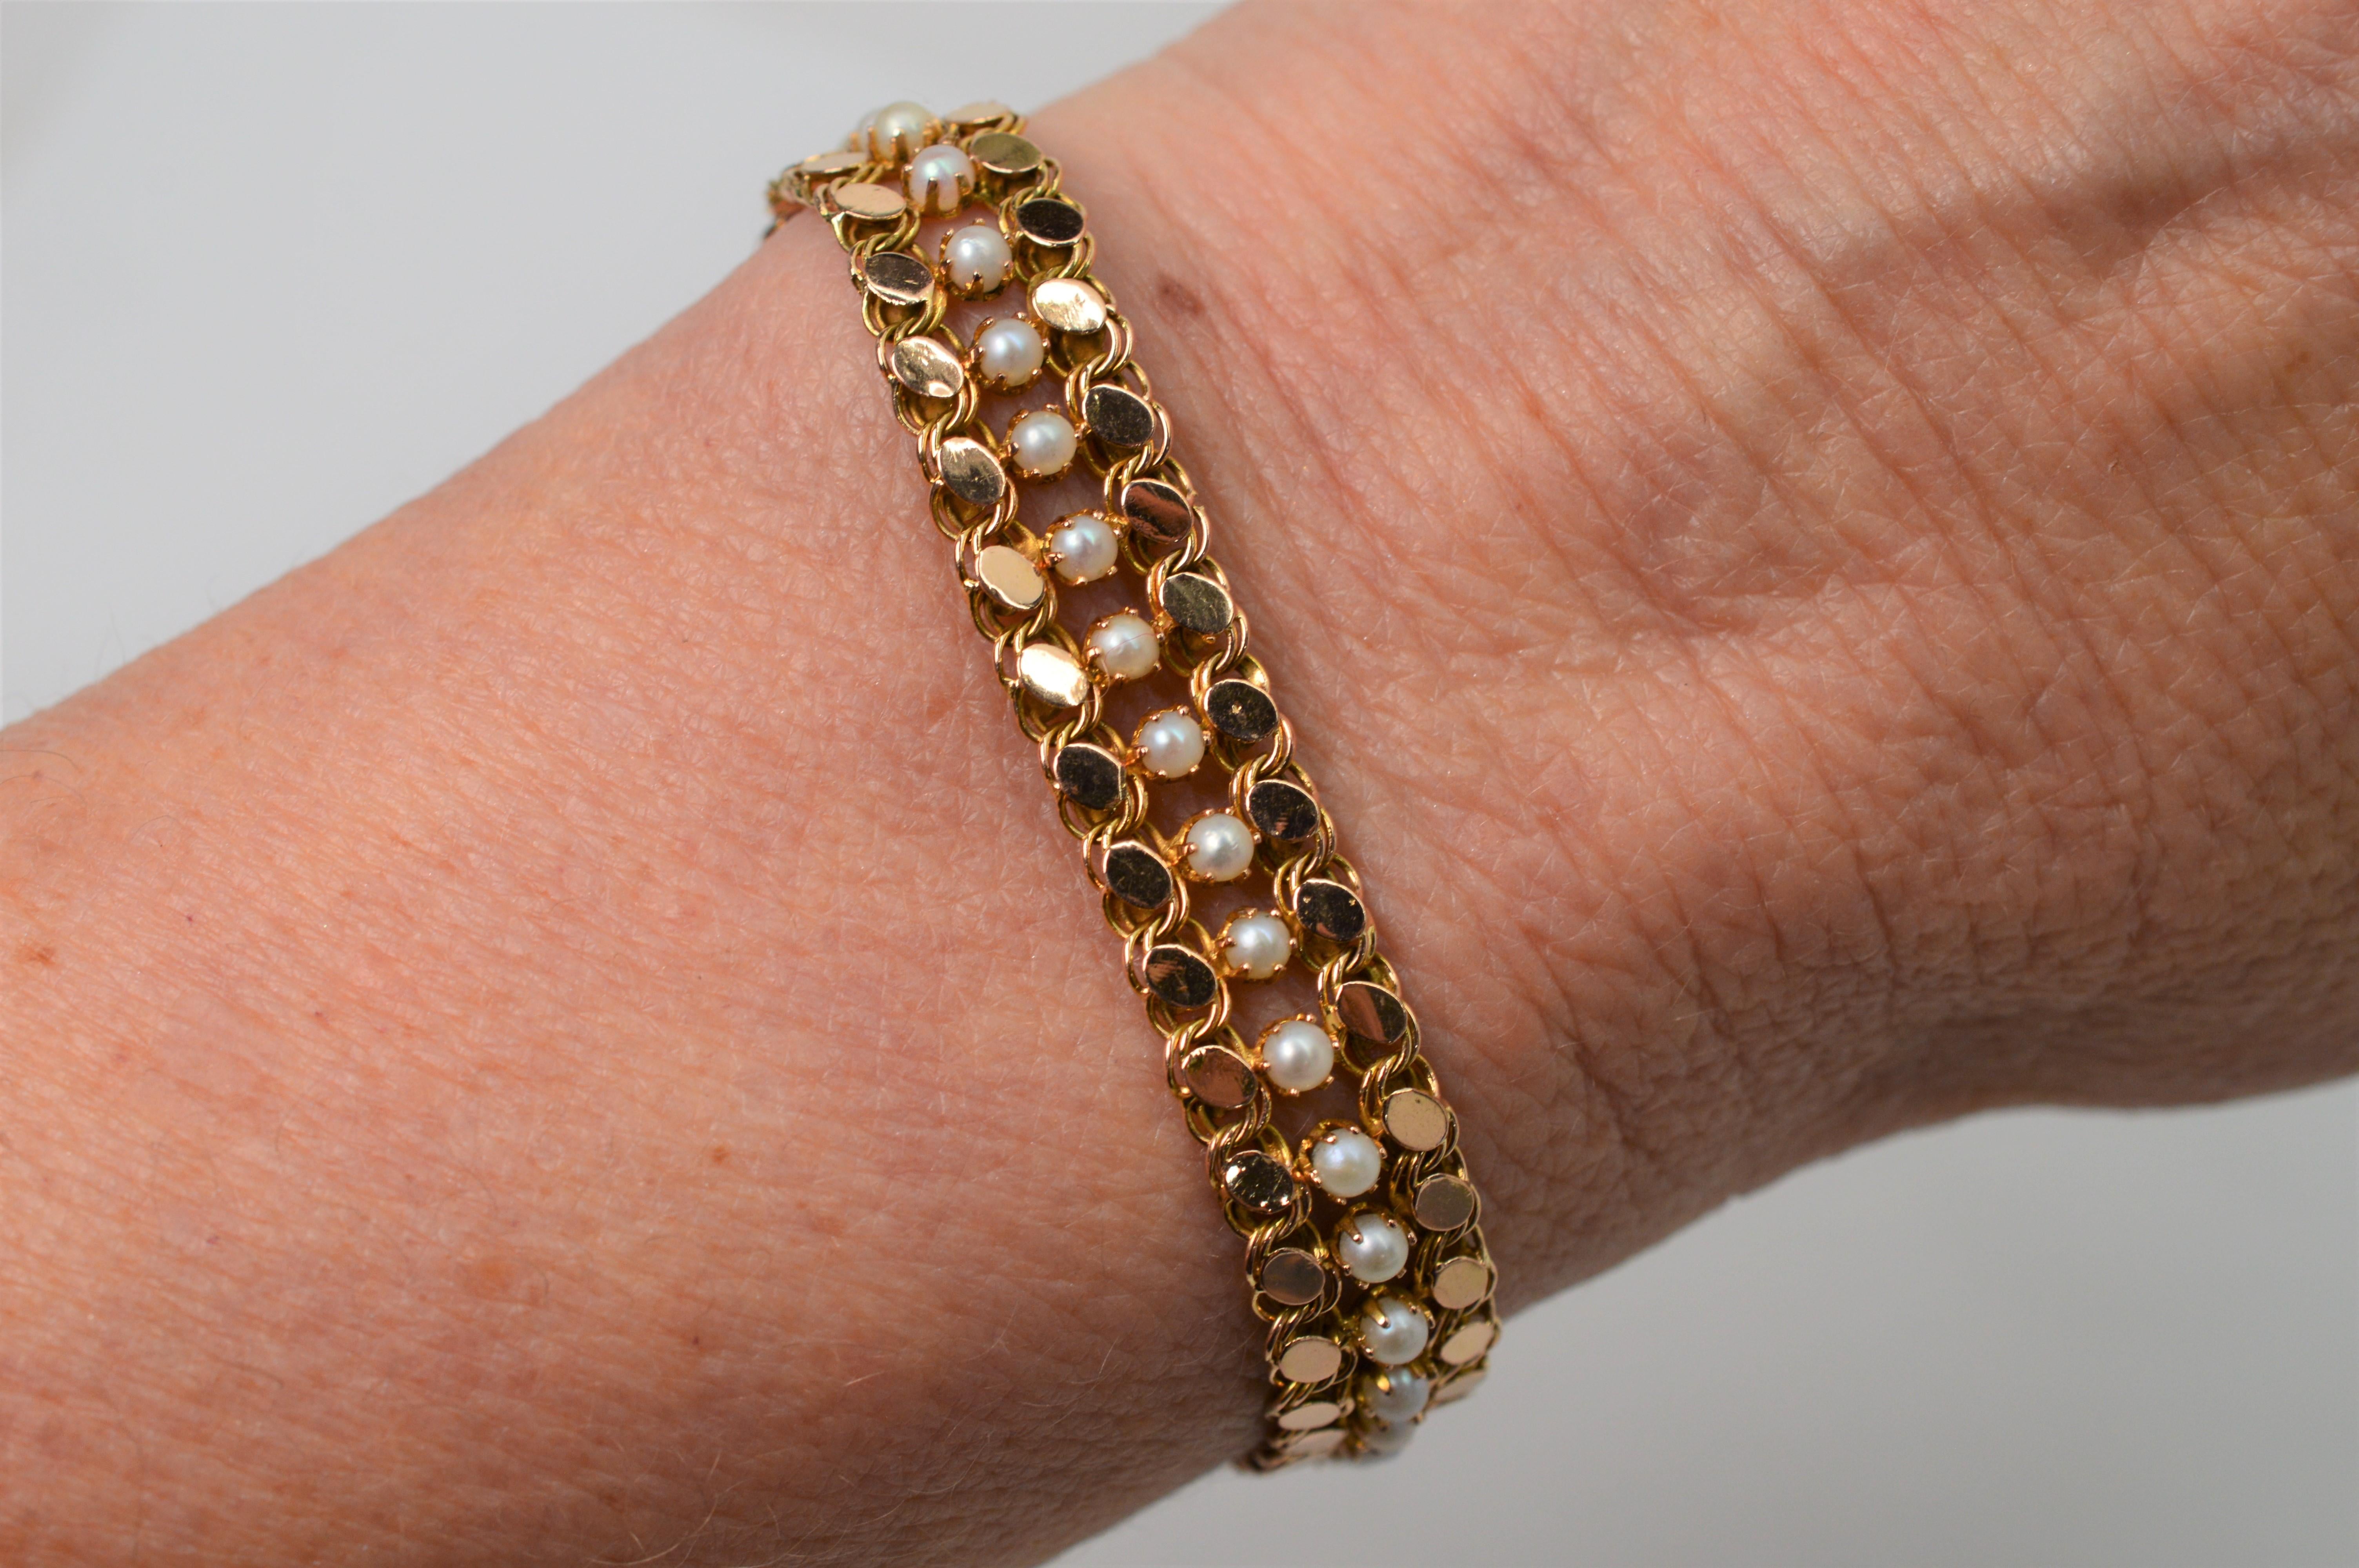 Fließende Eleganz mit zeitlosem Stil durch verschlungene Glieder aus glänzendem 14-karätigem Gelbgold, die jeweils mit zierlichen runden weißen Perlen in der Mitte eines jeden Gliedes besetzt sind.  Dieses Armband, das sich mühelos um das Handgelenk